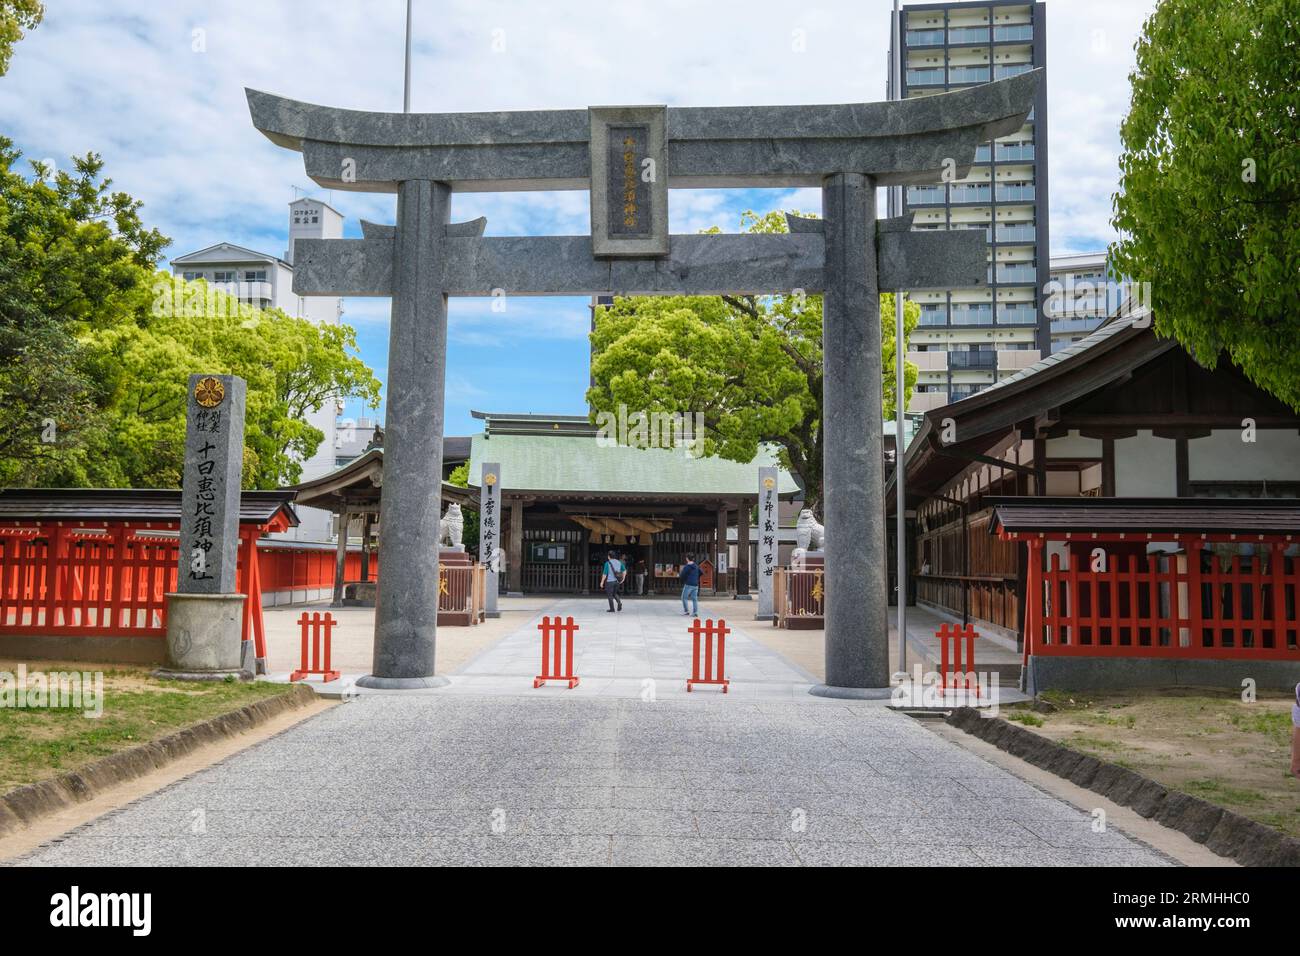 Japan, Kyushu, Fukuoka, Hakata. Torii Gate Entrance to Toka-Ebisu Shinto Shrine. Stock Photo